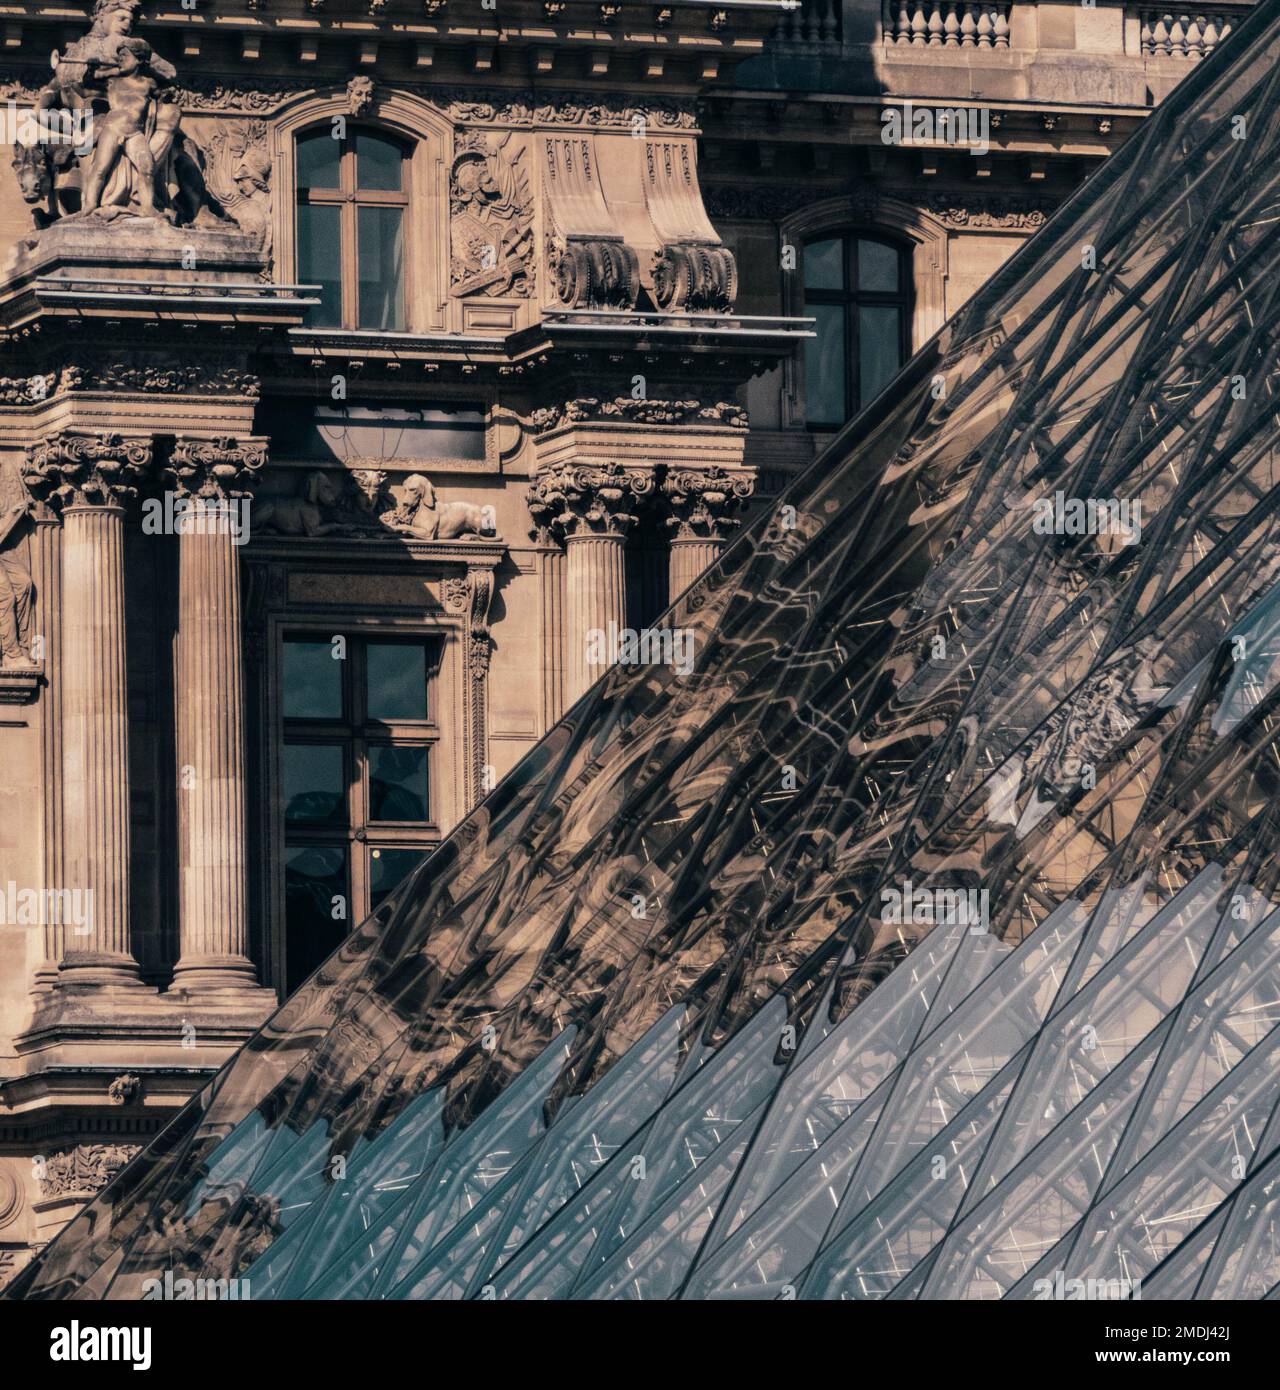 Louvre Museum in Paris, französische Fassaden, Spiegel und Ecken  Stockfotografie - Alamy